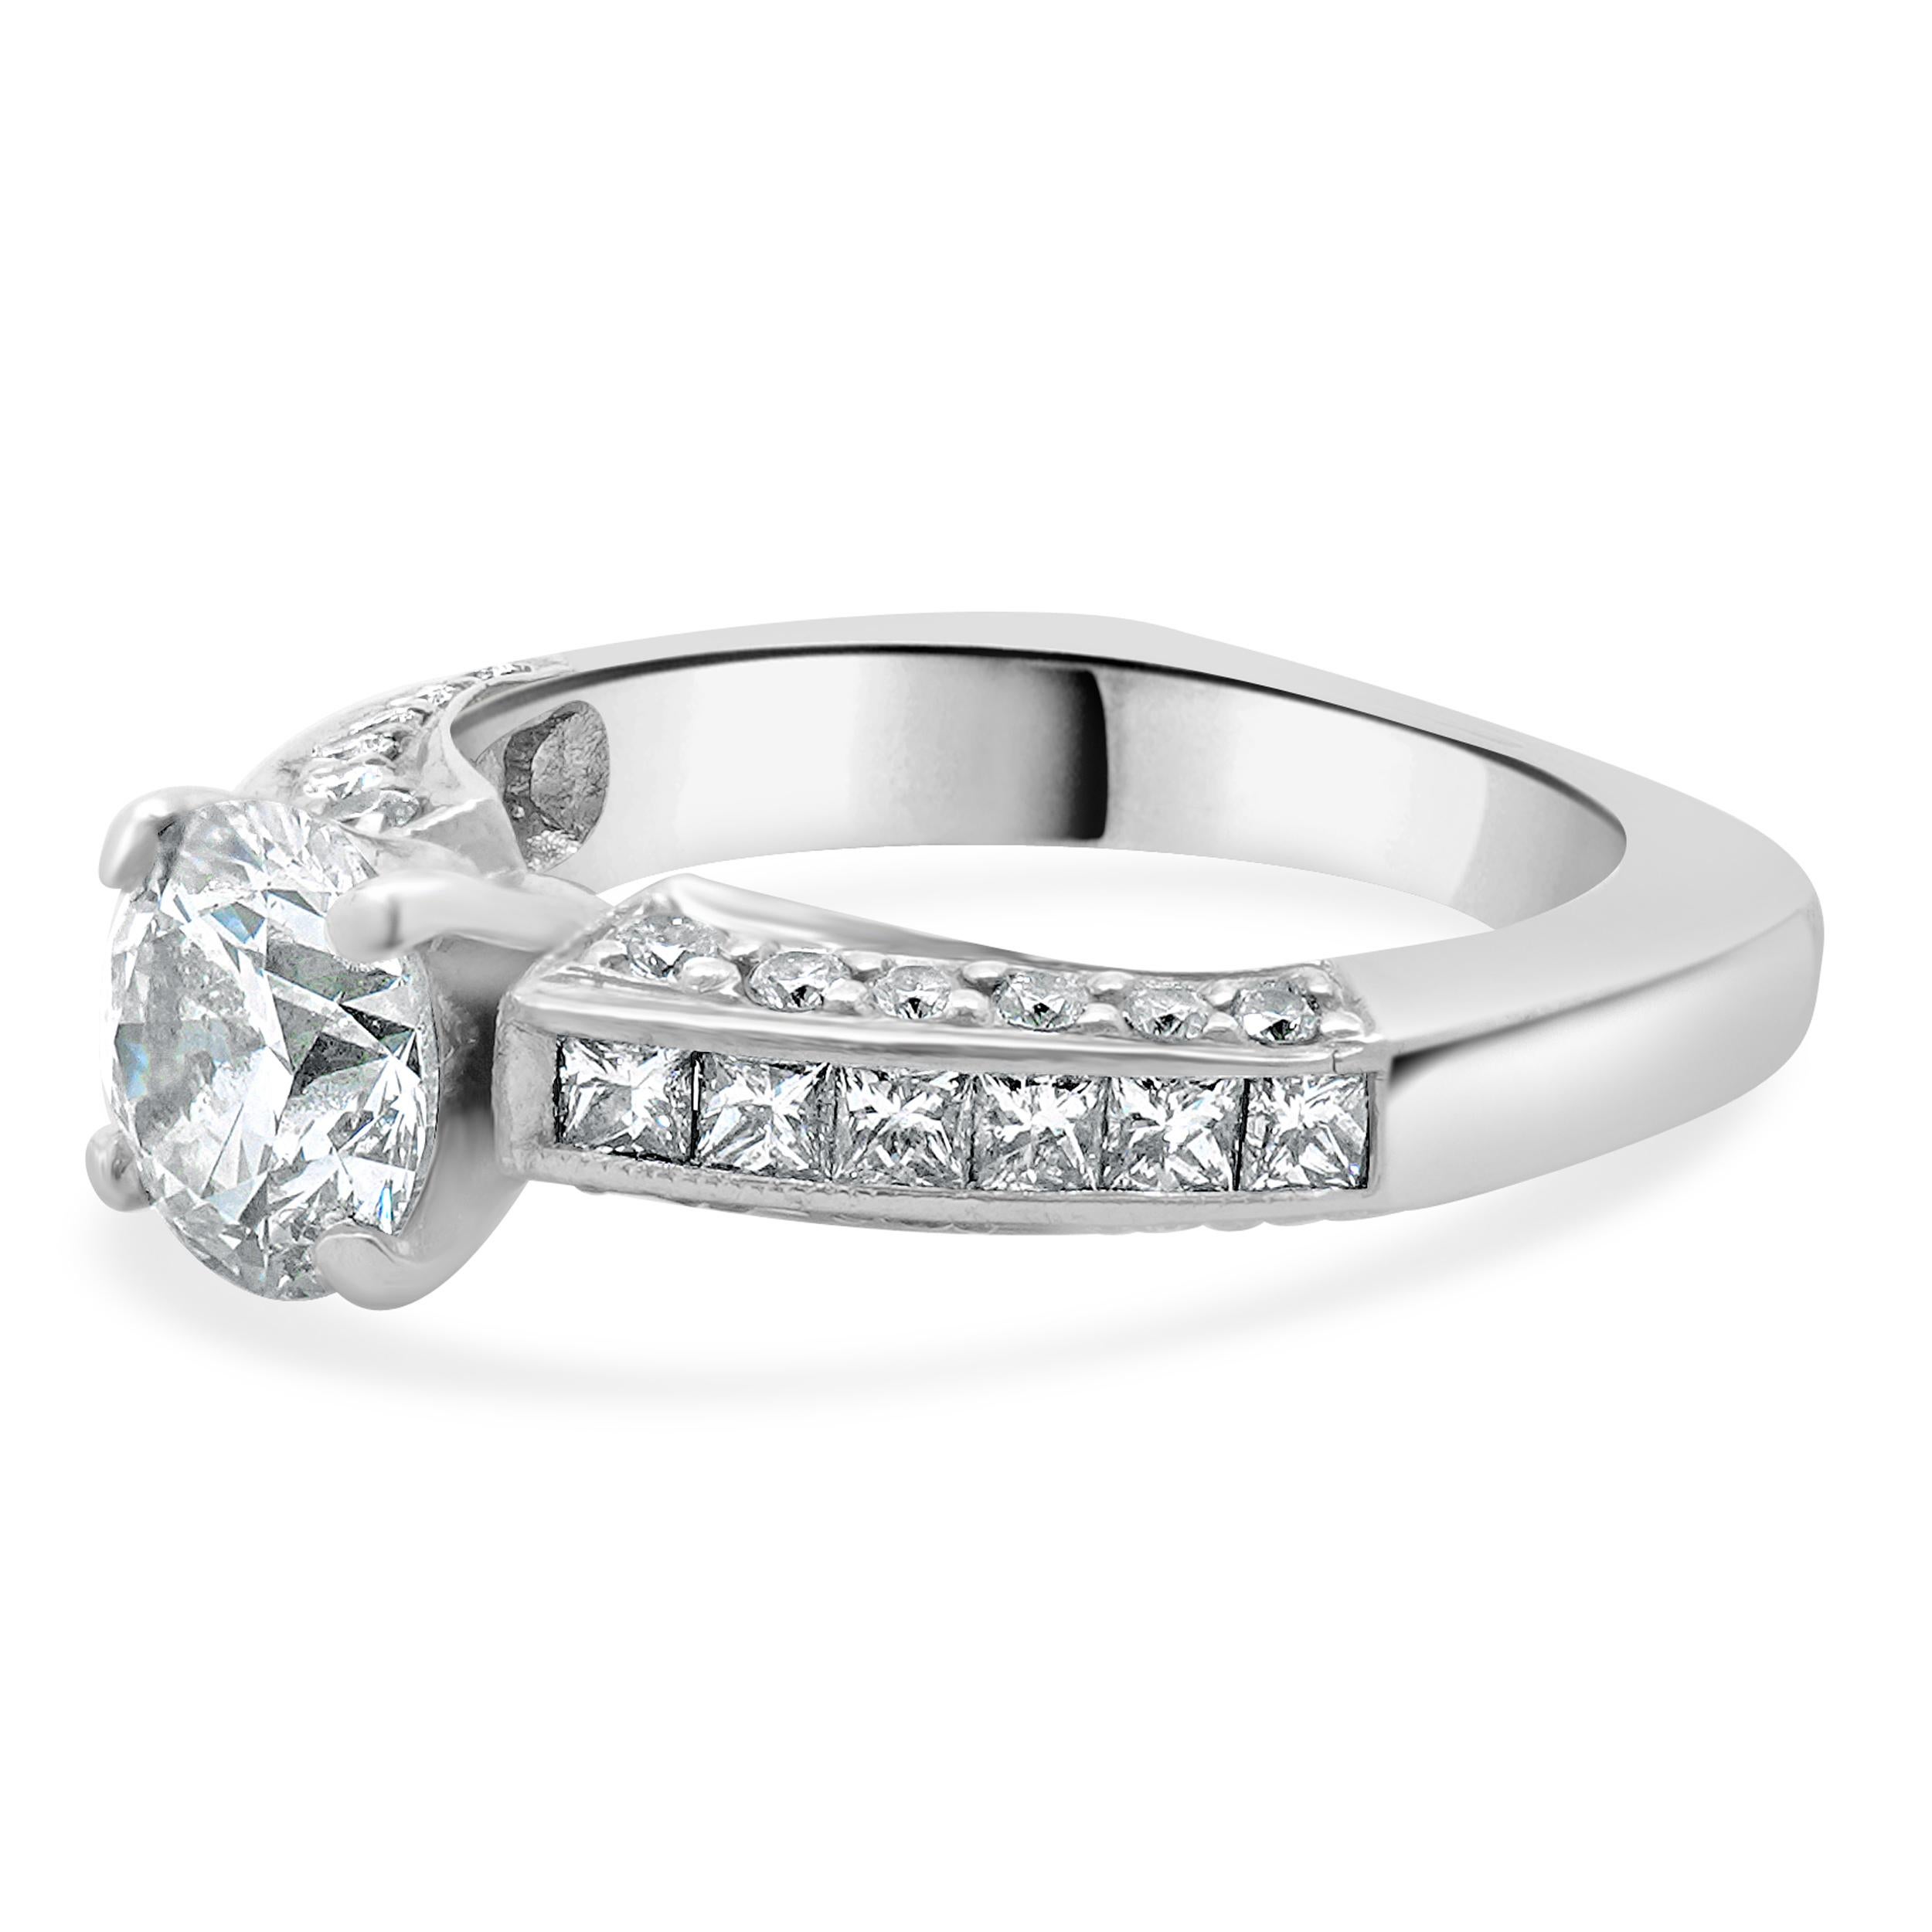 Diseñador: diseño personalizado
Material: platino
Diamante central: 1 talla brillante redonda = 1,27ct
Color : G
Claridad : SI1
Diamante: 36 talla redonda y princesa = 0,72ctw
Color : G / H
Claridad : SI1-2
Dimensiones: la parte superior del anillo